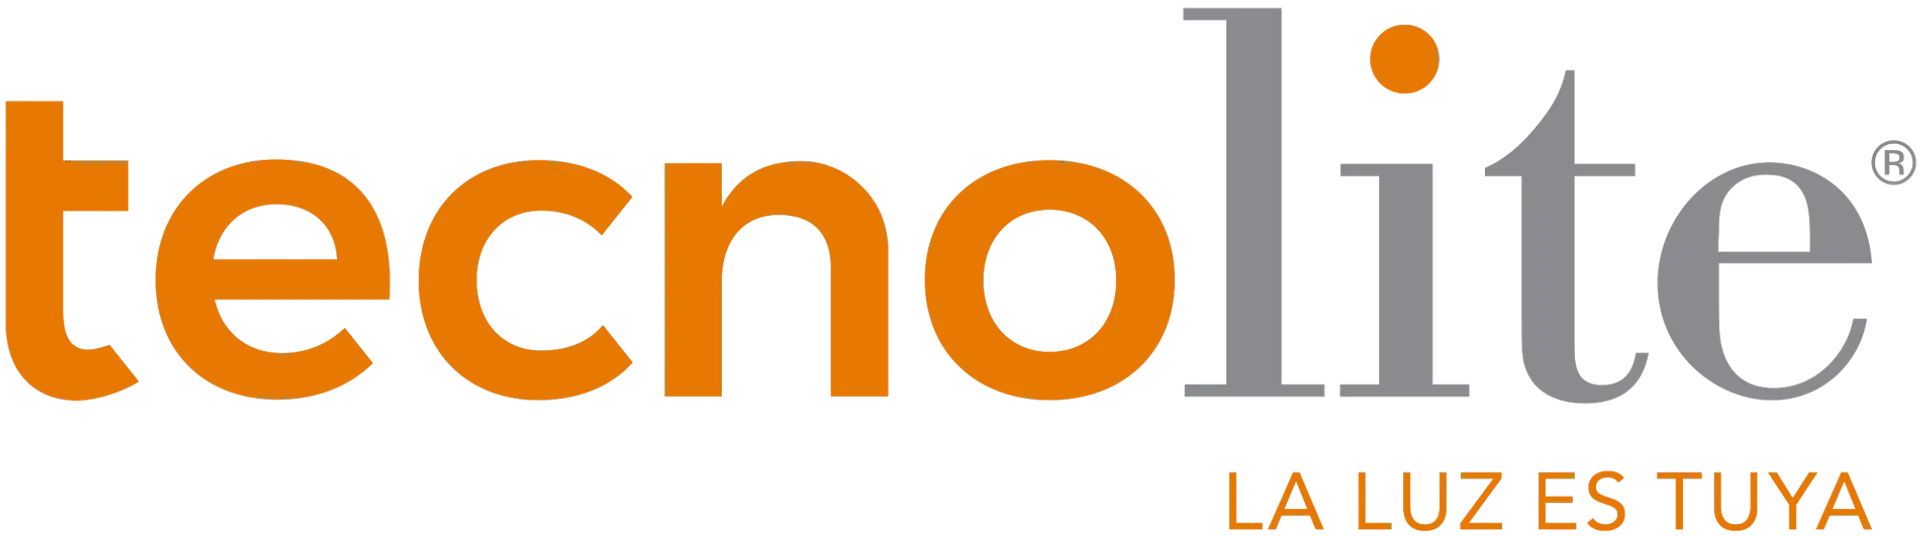 TECNOLITE logo